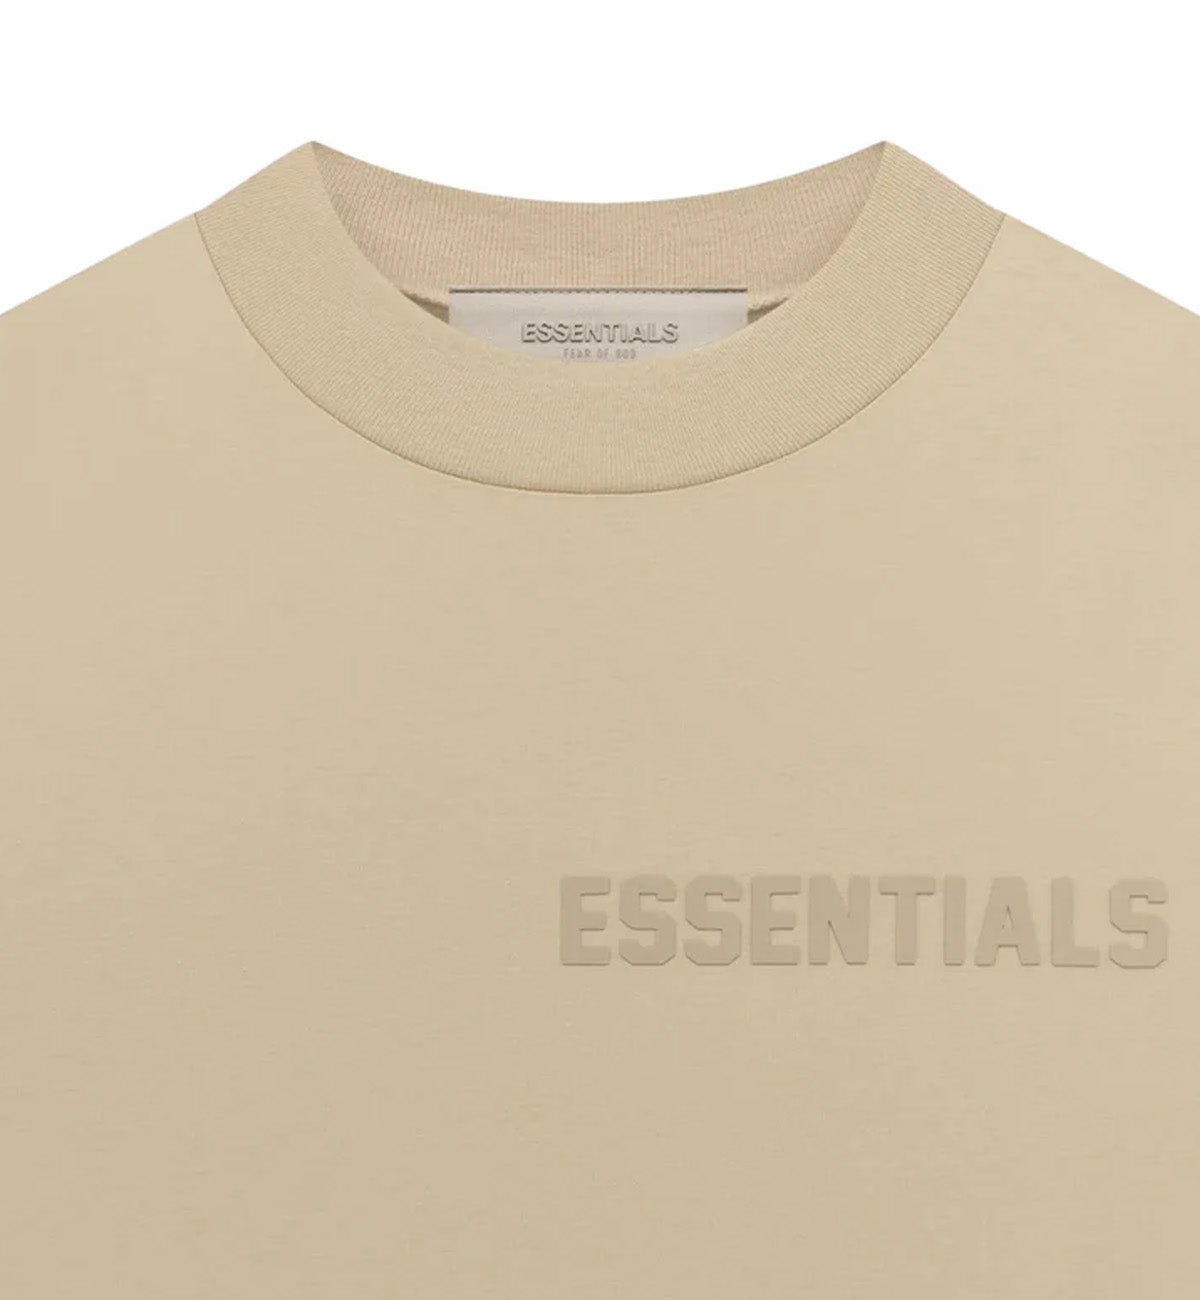 Fear of God - Essentials T-Shirt SS23 (Sand)